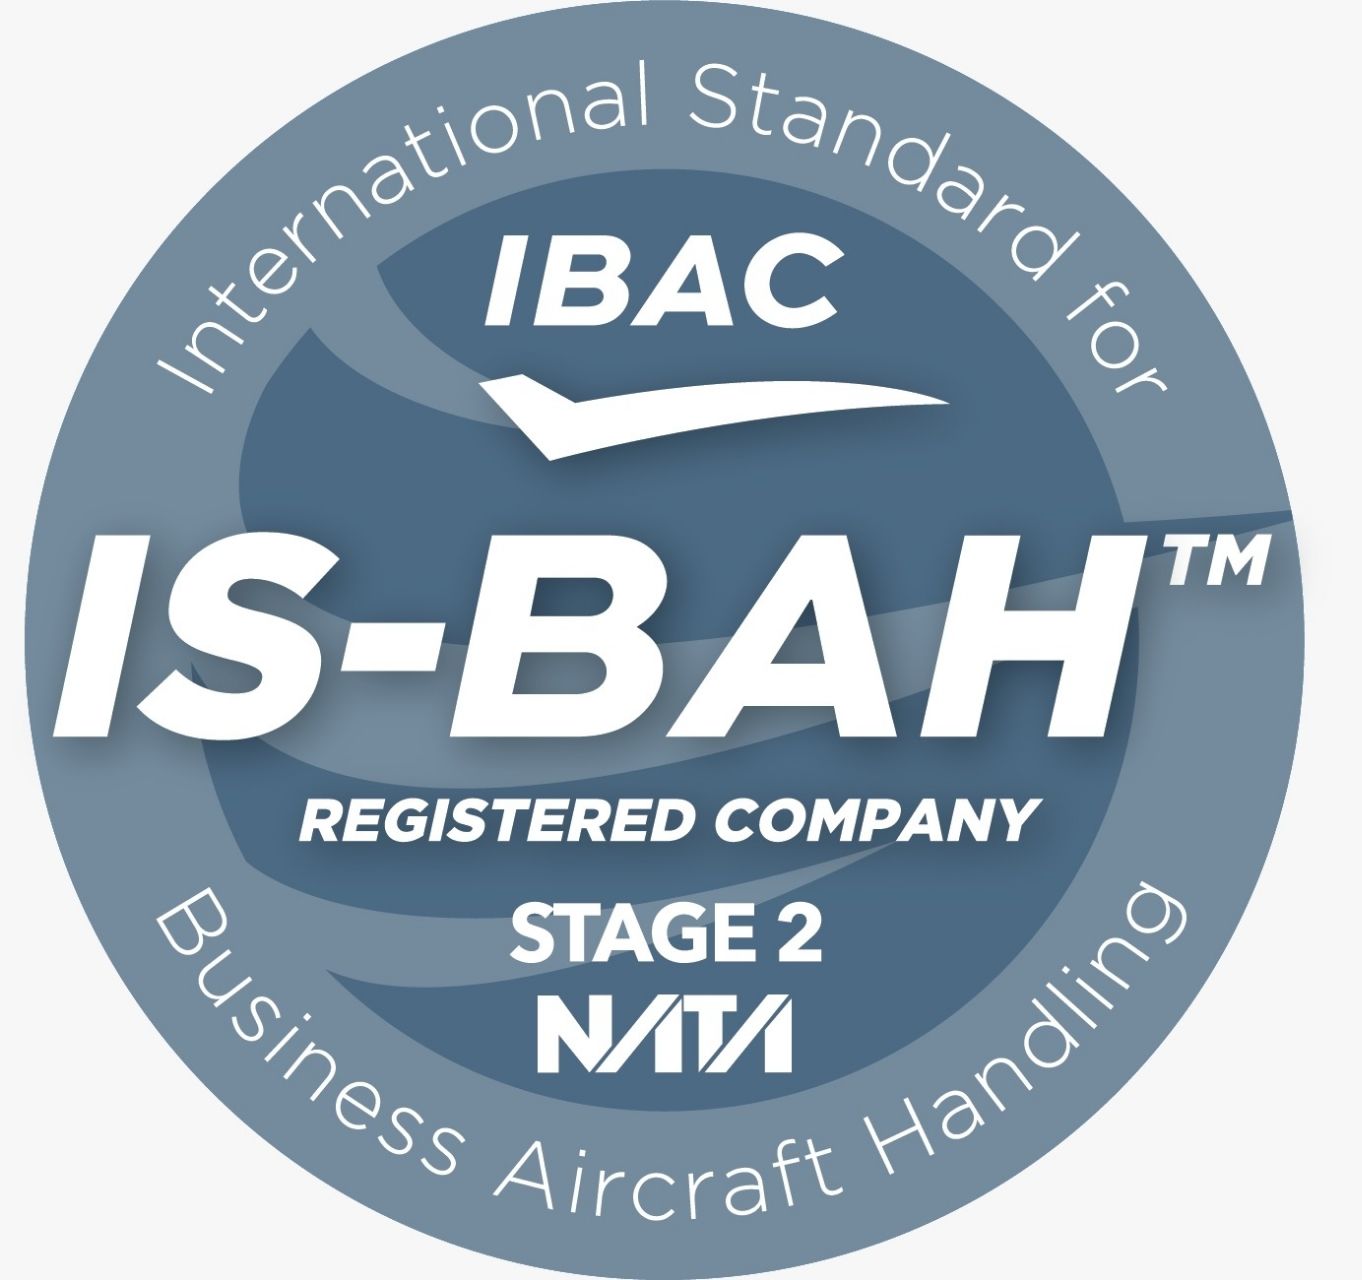 Balearic Islands based Ibizair certified IS-BAH Stage II